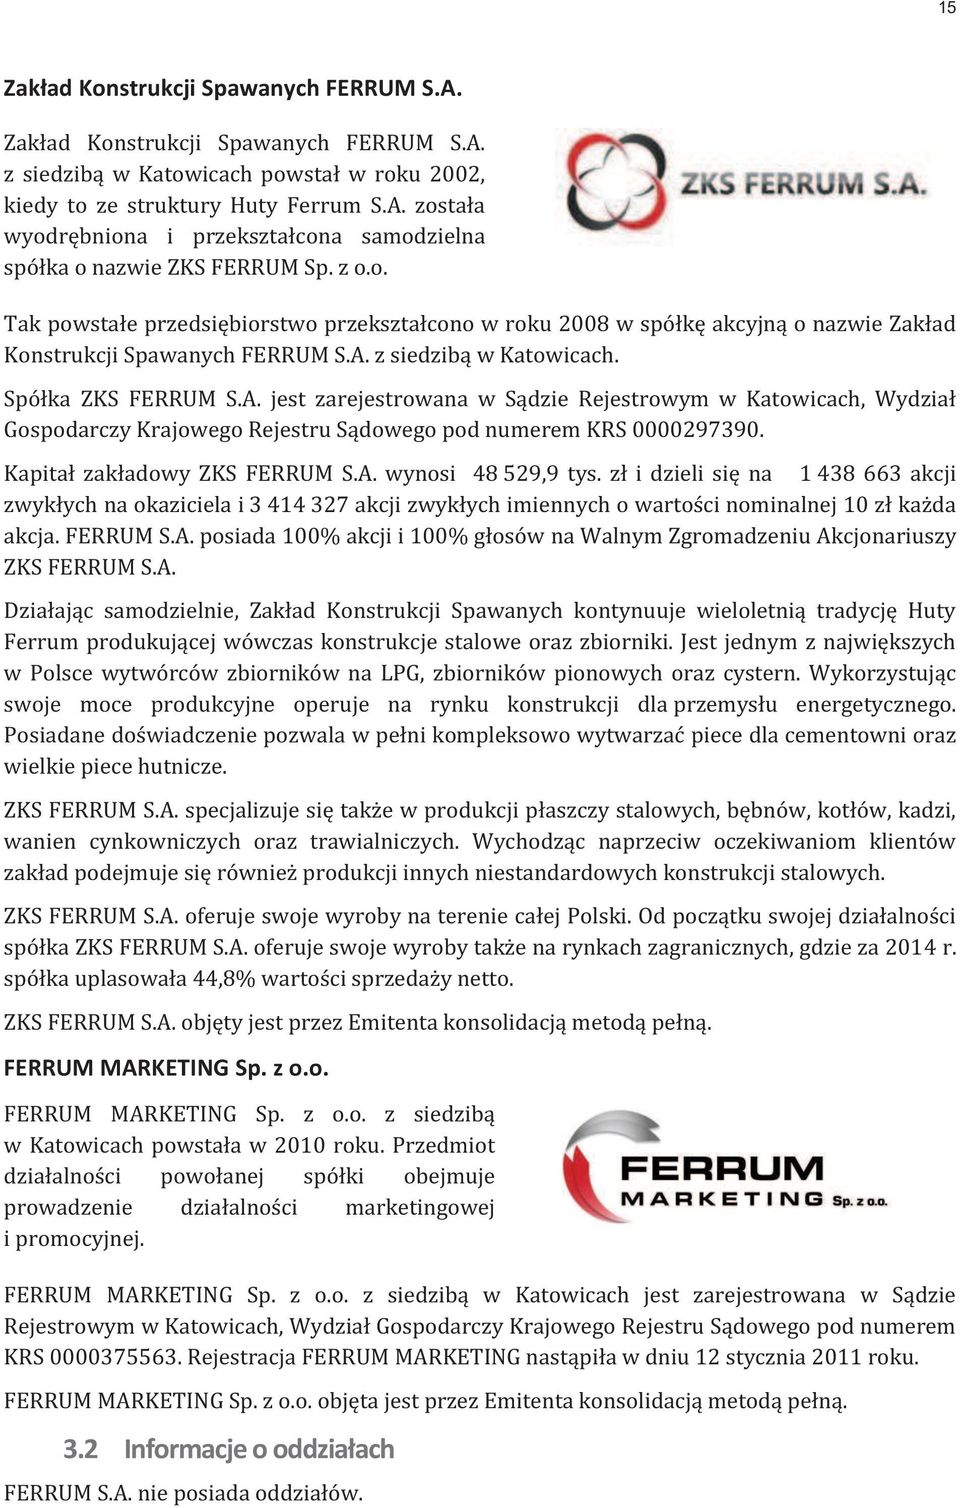 z siedzibą w Katowicach. Spółka ZKS FERRUM S.A. jest zarejestrowana w Sądzie Rejestrowym w Katowicach, Wydział Gospodarczy Krajowego Rejestru Sądowego pod numerem KRS 0000297390.